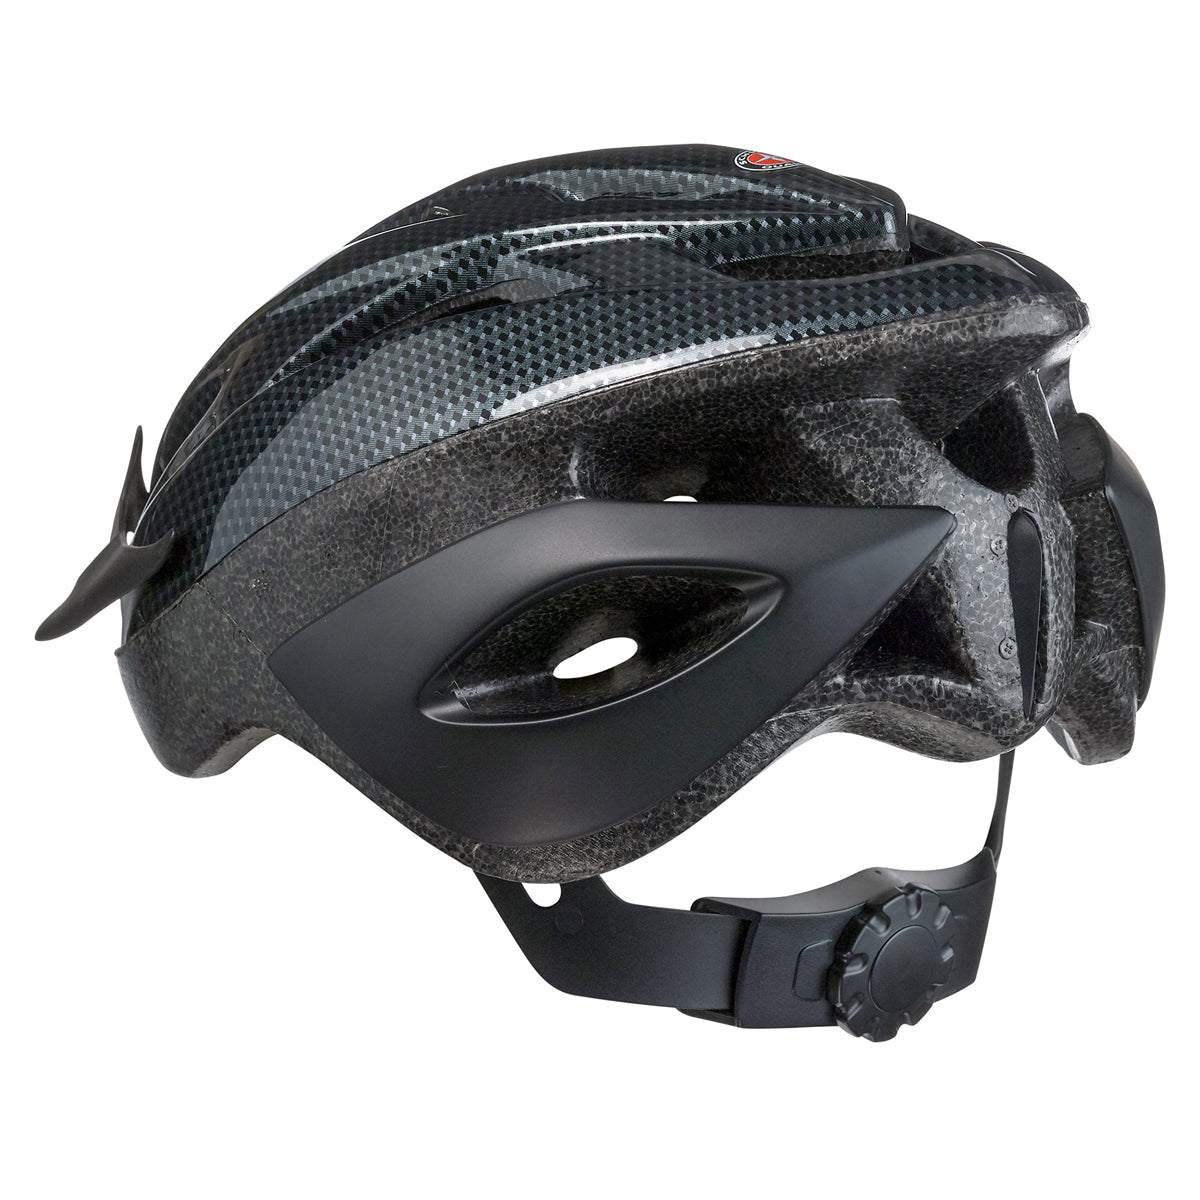 Schwinn Thrasher Bike Helmet.